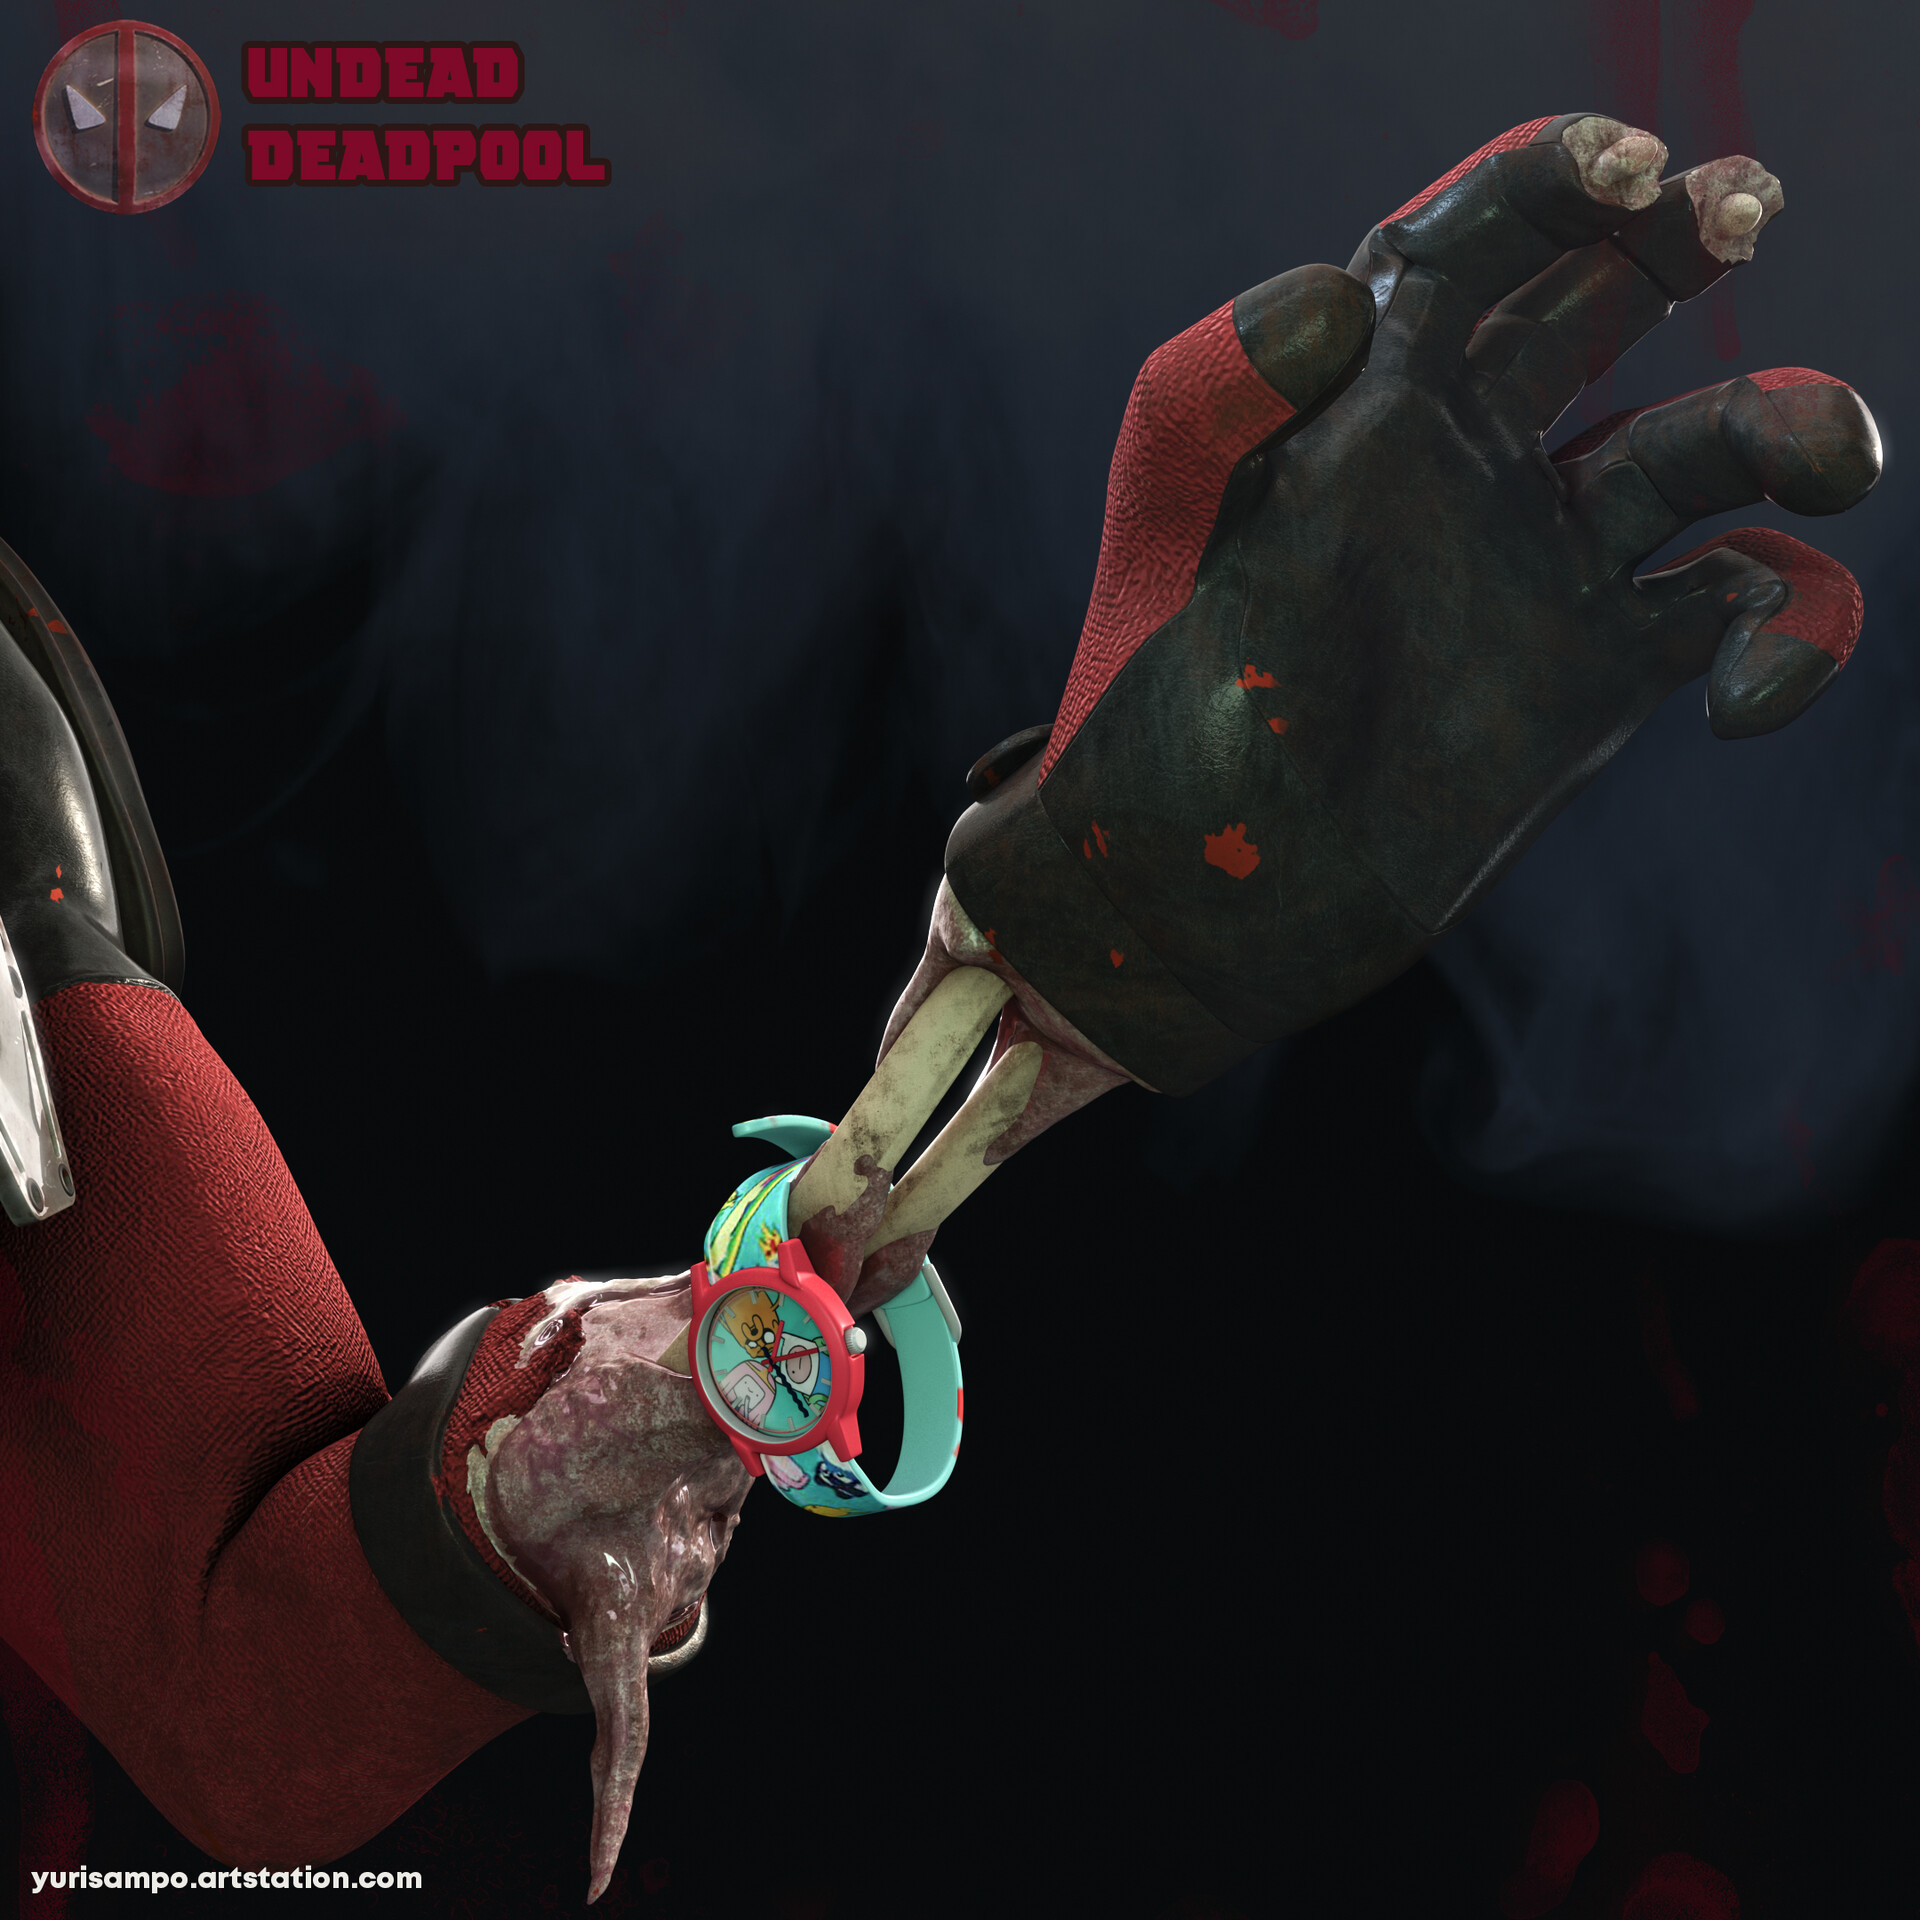 ArtStation - Deadpool Knife Block (Fan art)